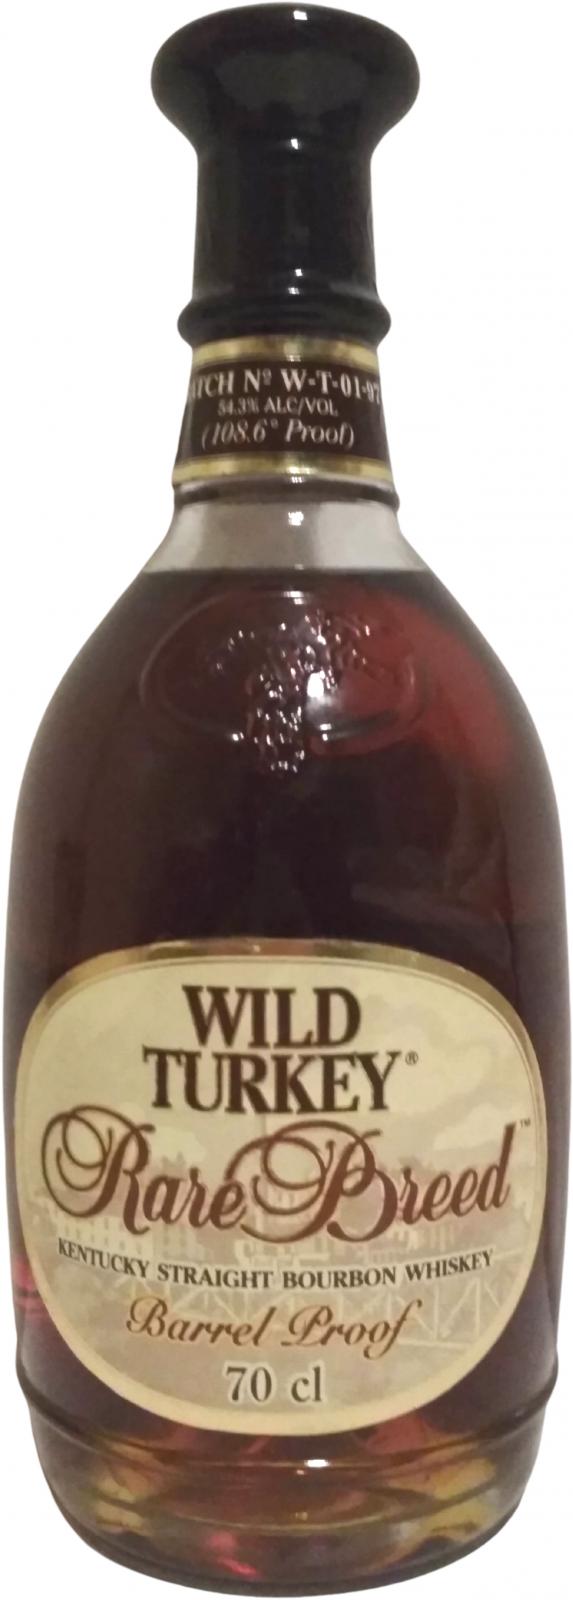 Wild Turkey Rare Breed Barrel Proof Batch W-T-01-97 54.3% 700ml